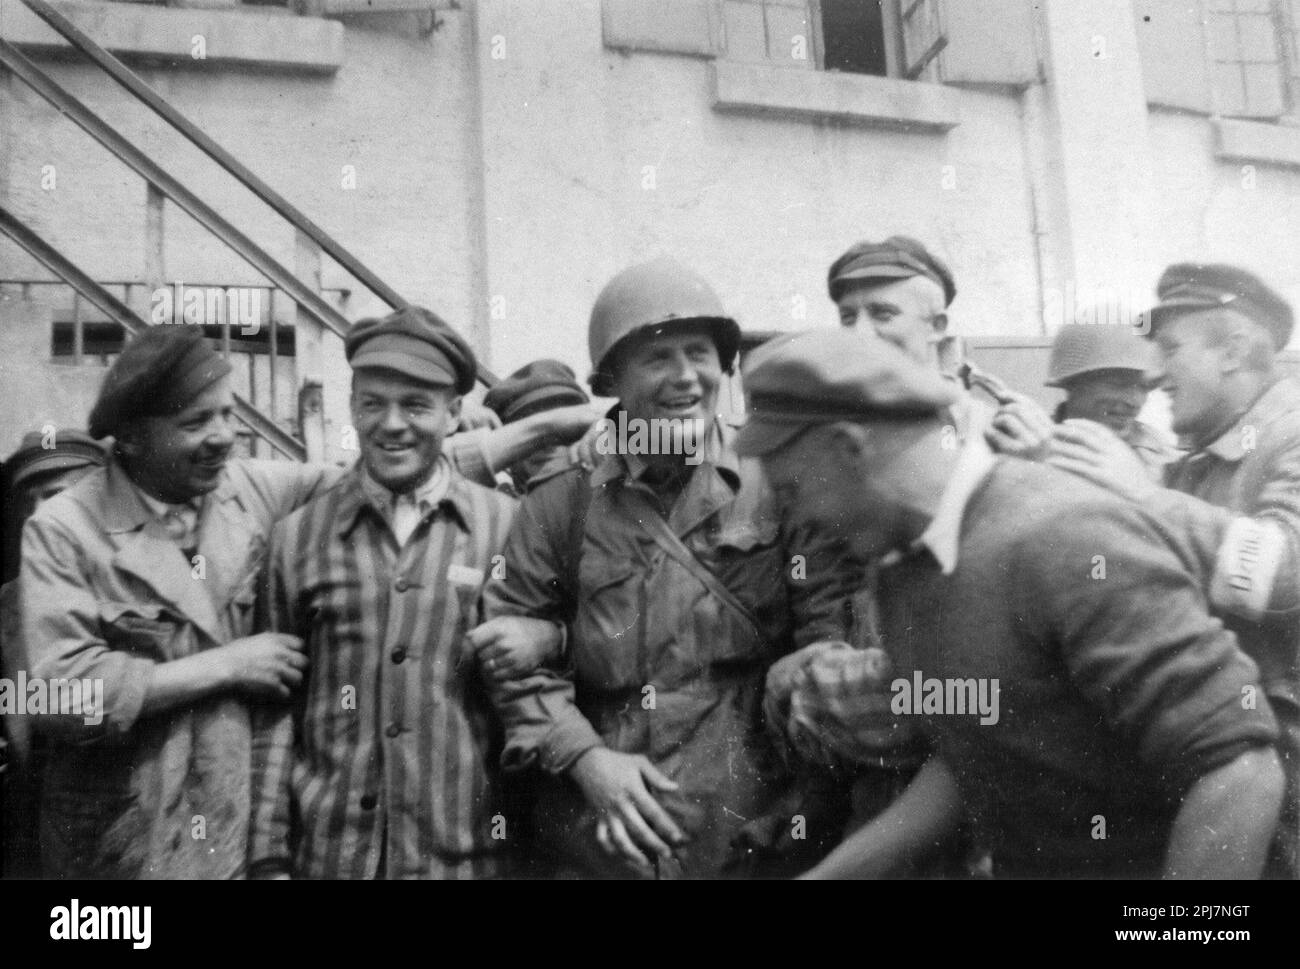 Ein amerikanischer Soldat ist umgeben von Überlebenden im neu befreiten Konzentrationslager Dachau, 29. April 1945 in Dachau, Deutschland. Amerikanische Soldaten der 7. US-Armee, darunter Mitglieder der 42. Infanterie, 45. Infanterie und 20. Panzerdivisionen, nahmen an der Befreiung des Lagers Teil. Stockfoto